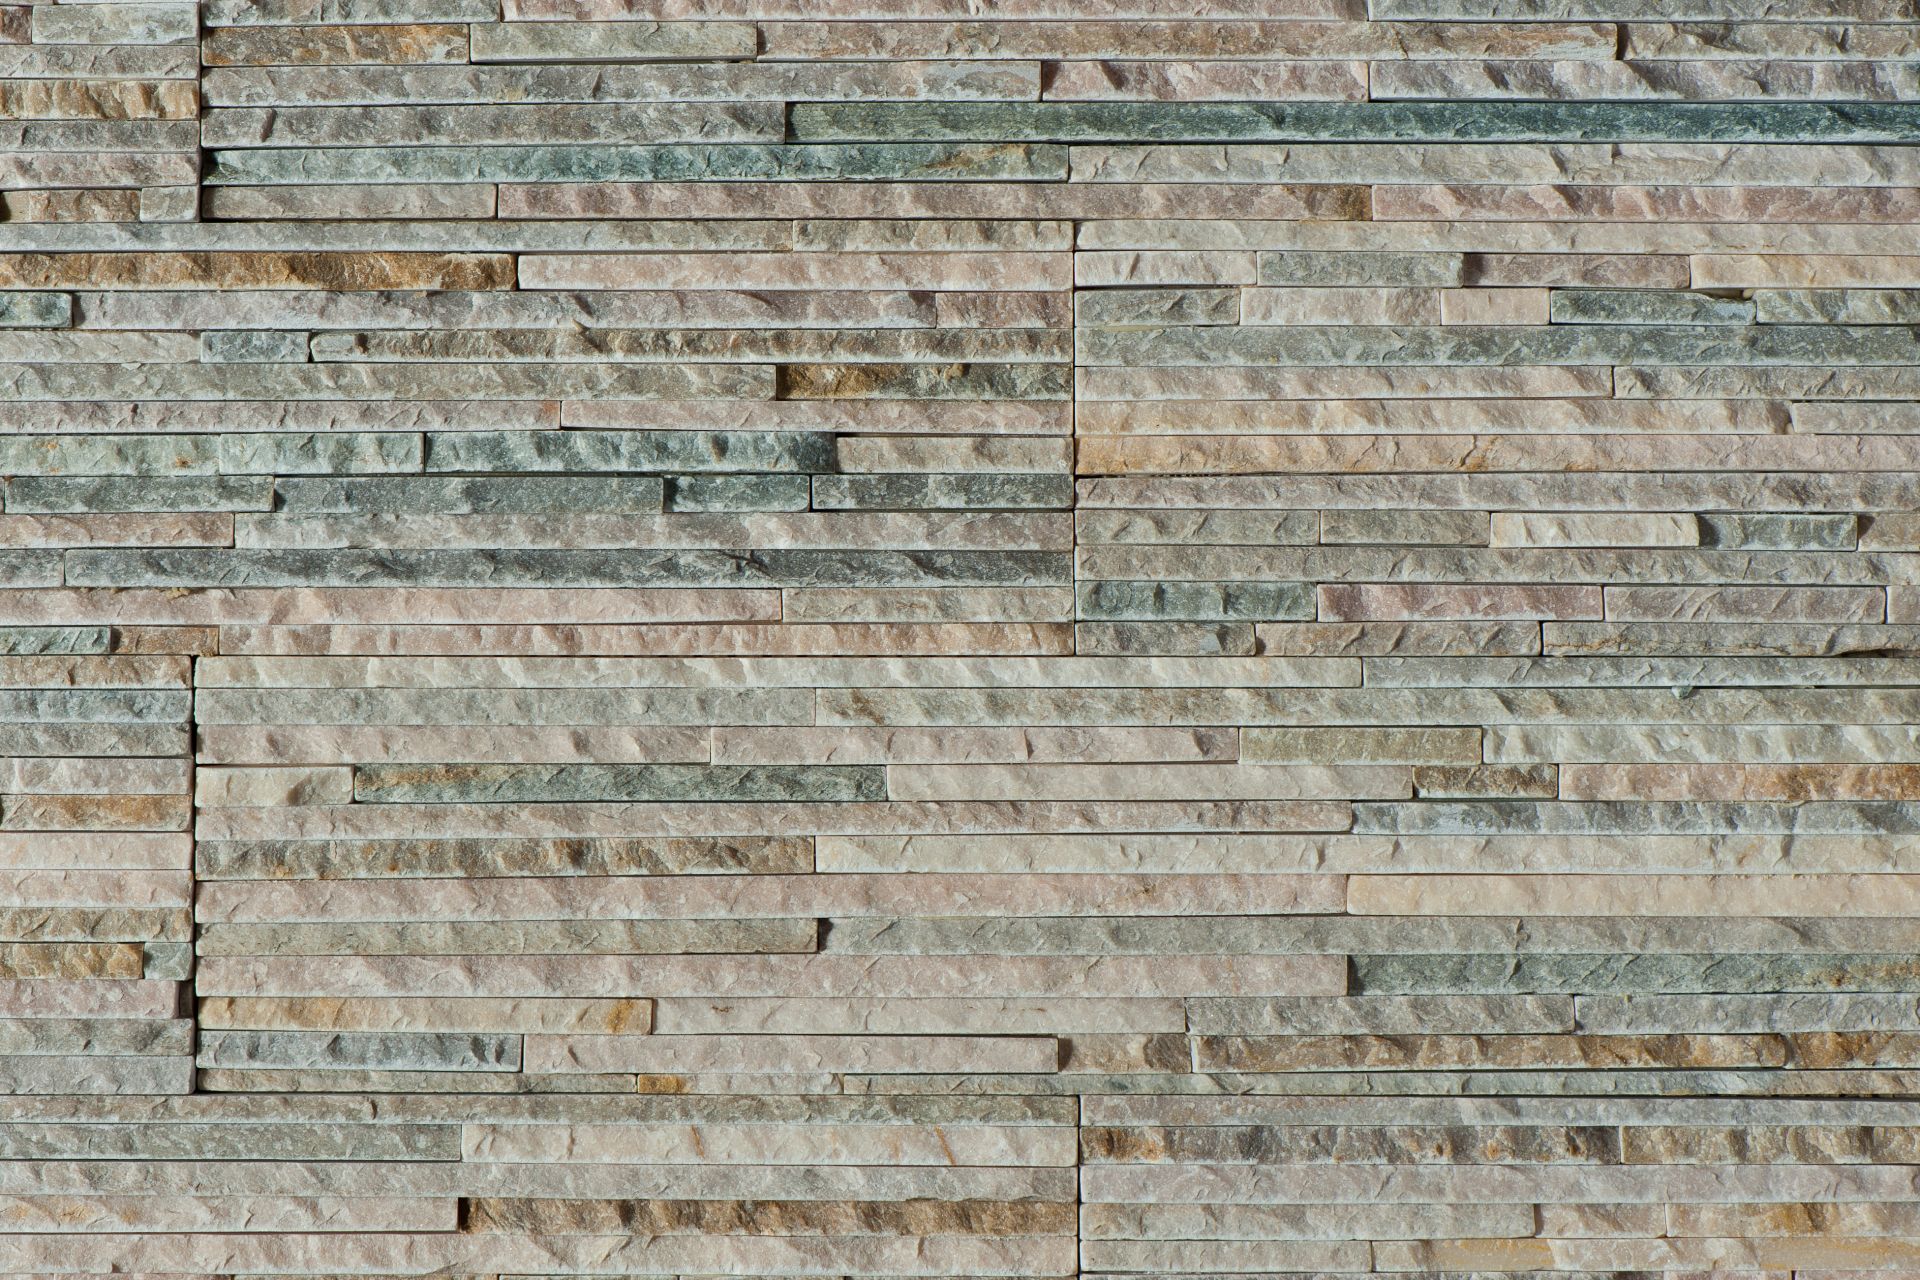 Parigi Bianco - Obklady a dlažby z přírodního kamene Bricks & Cotto experts